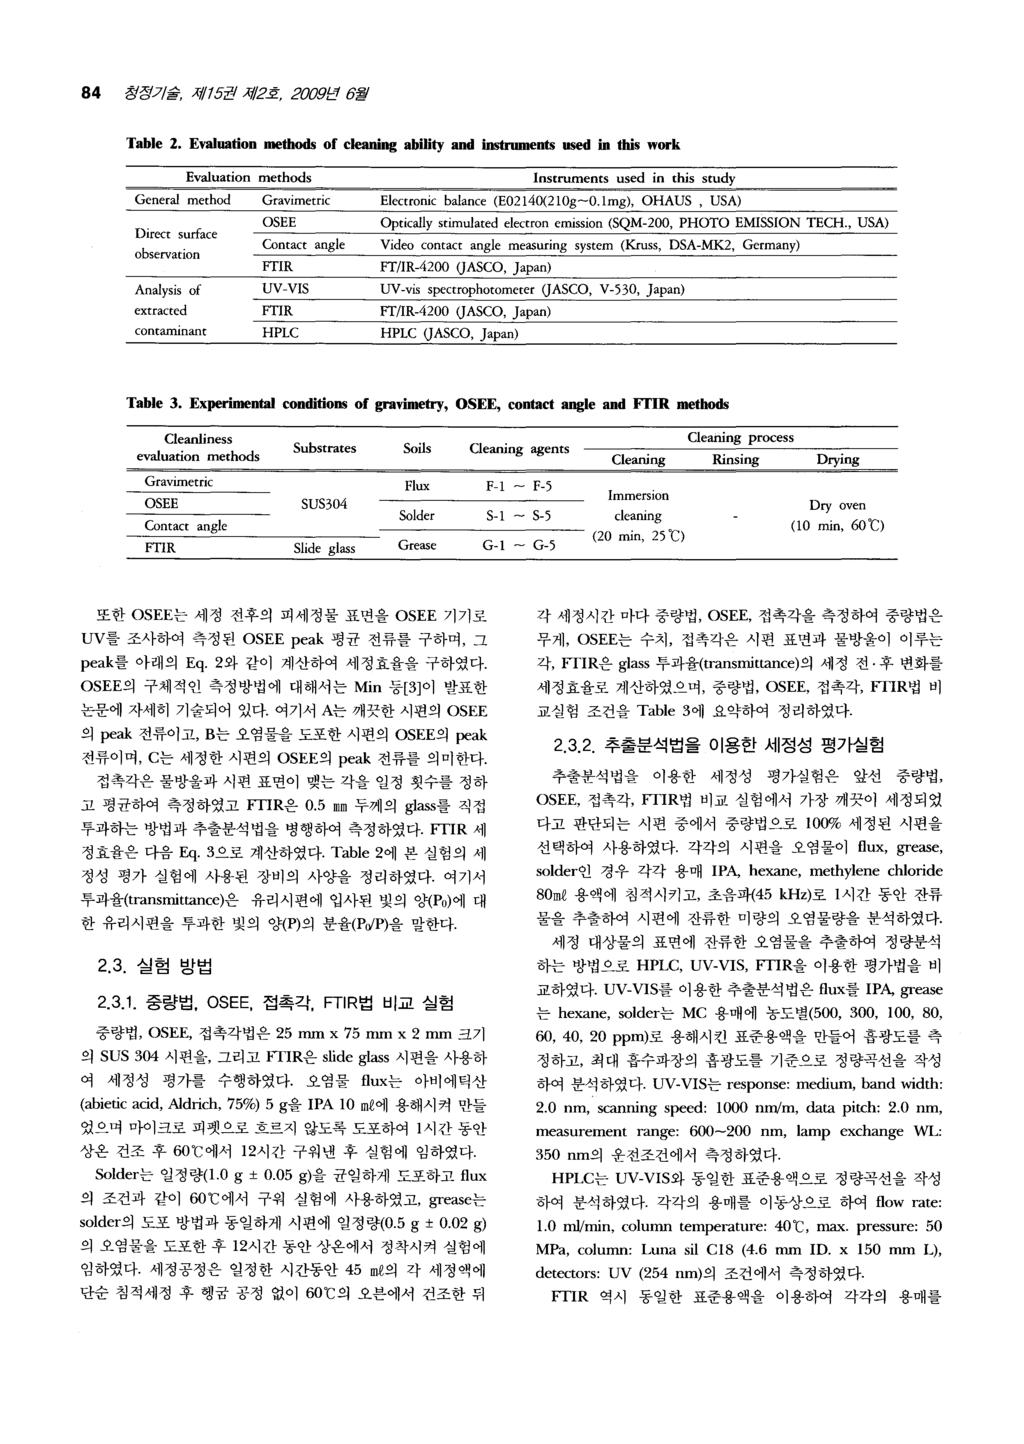 84 정징 '7/ 울, 제 15; 권제 2 호, 2009; 던 6 월 Table 2.